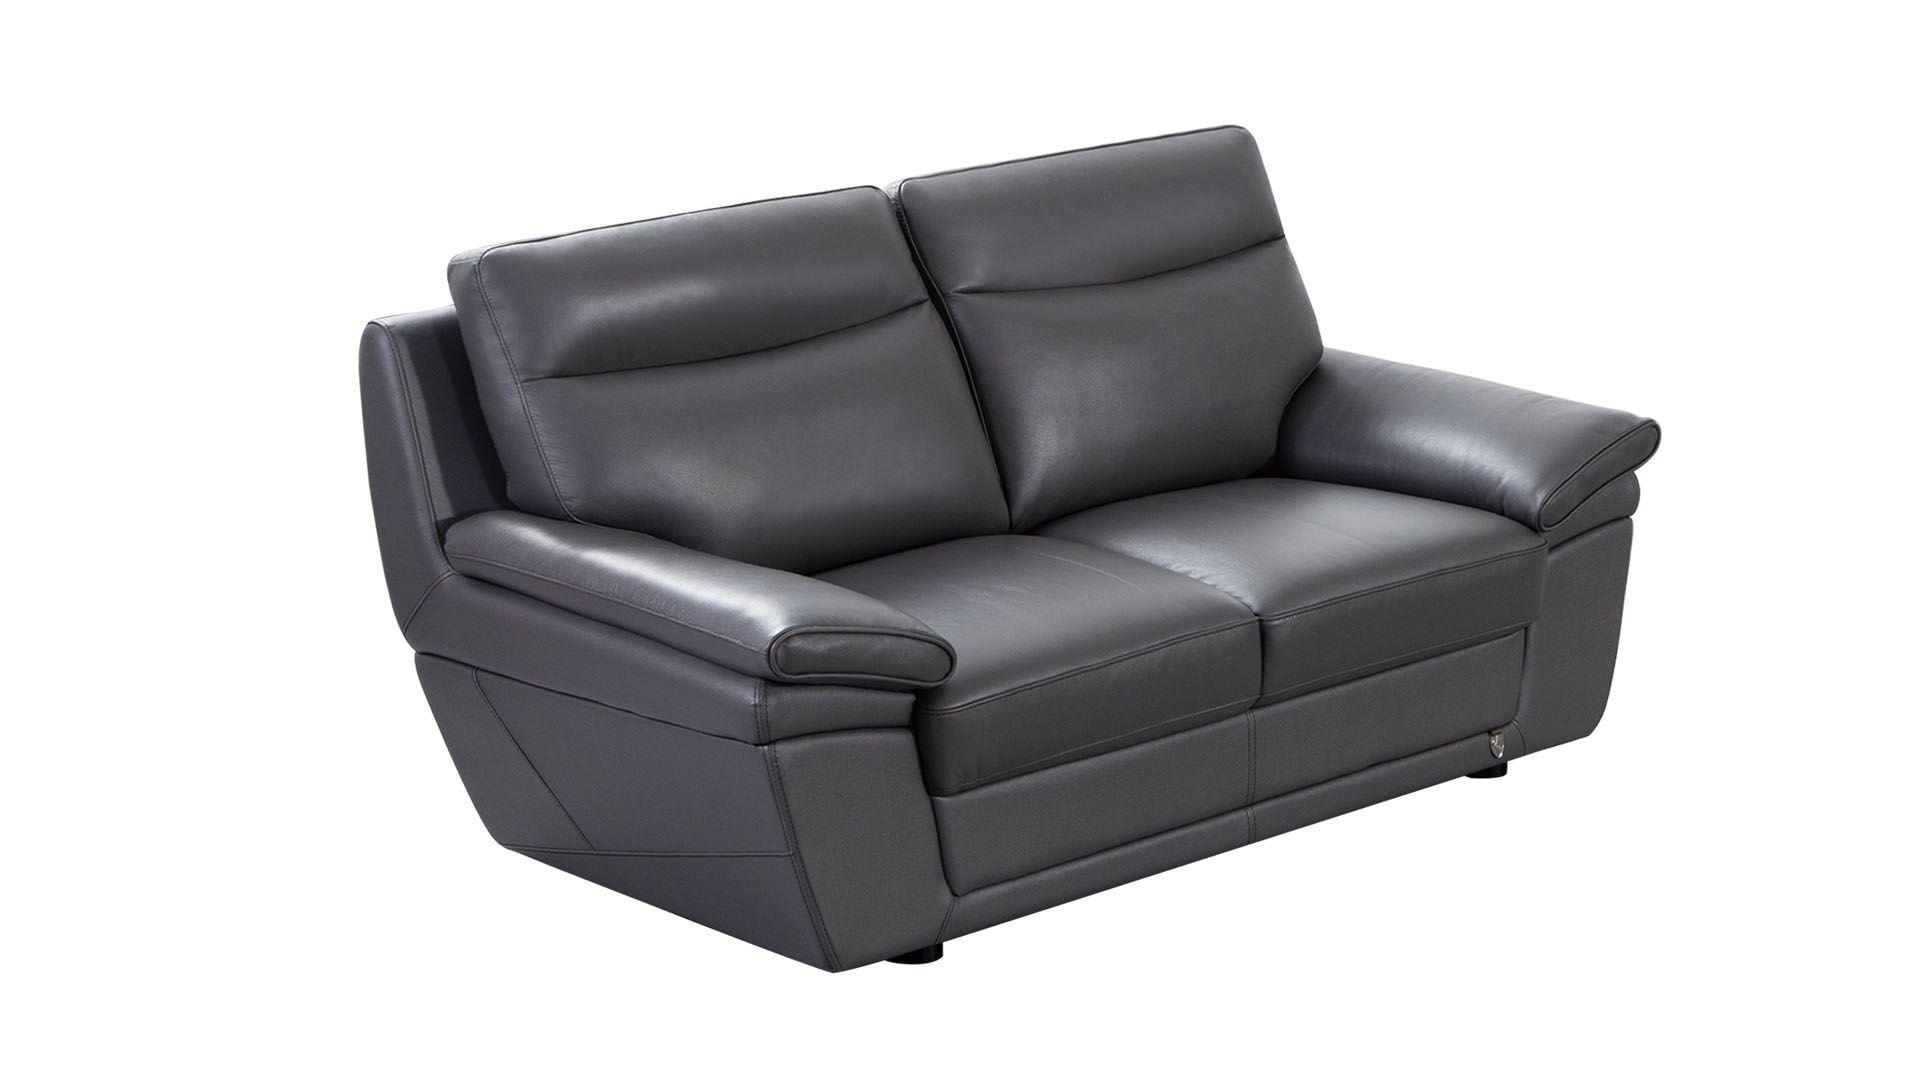 

    
EK092-GR Sofa Set
